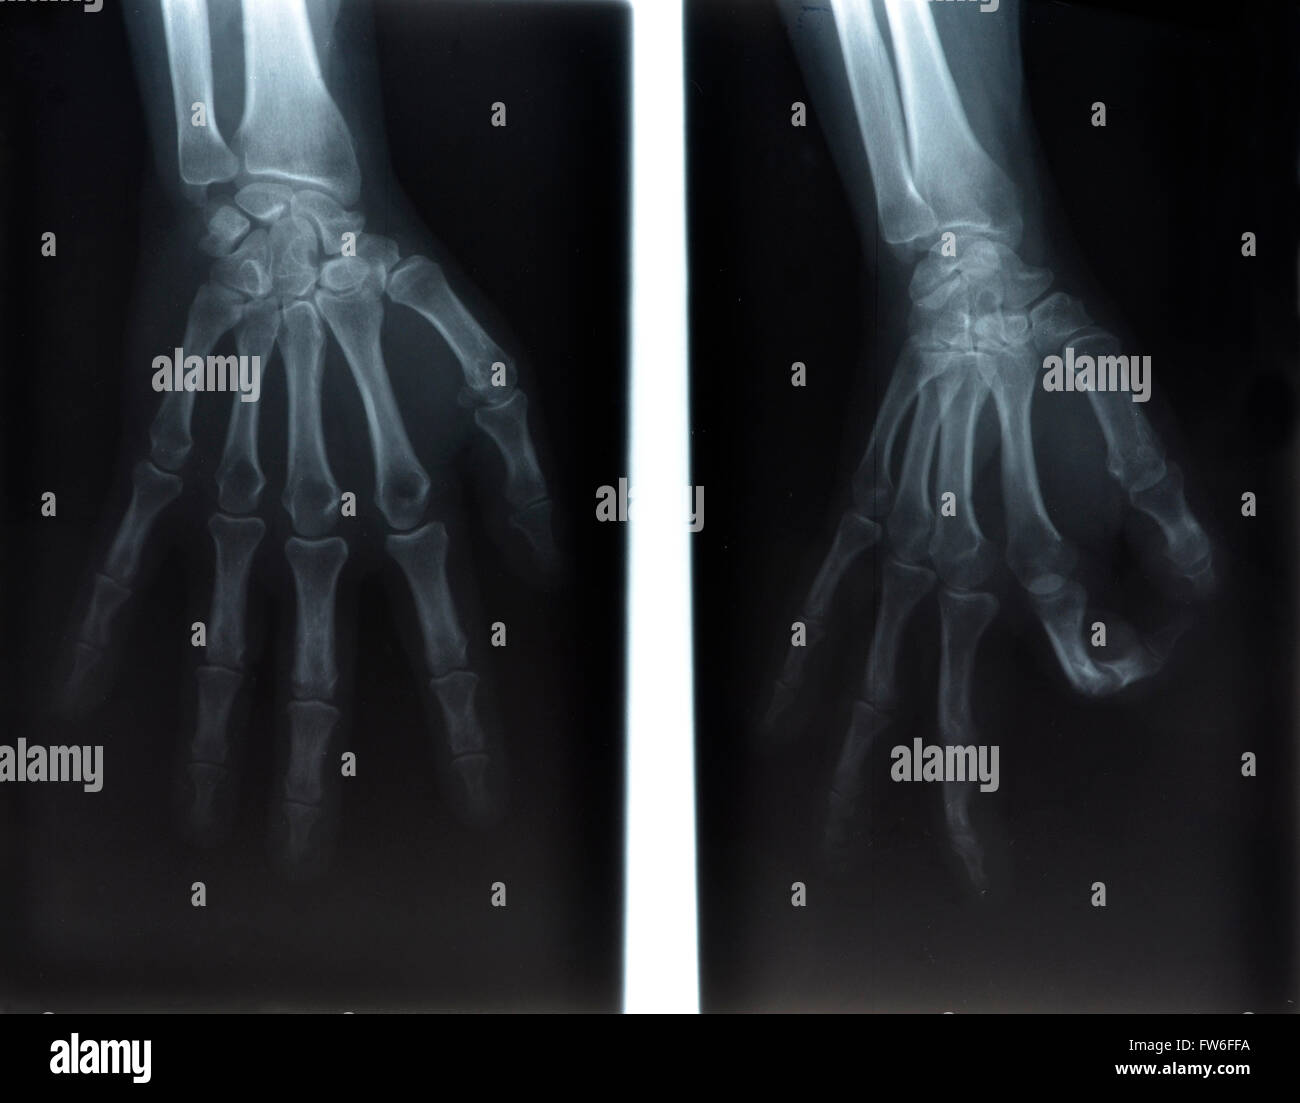 Radiographie de la main de l'homme Banque D'Images